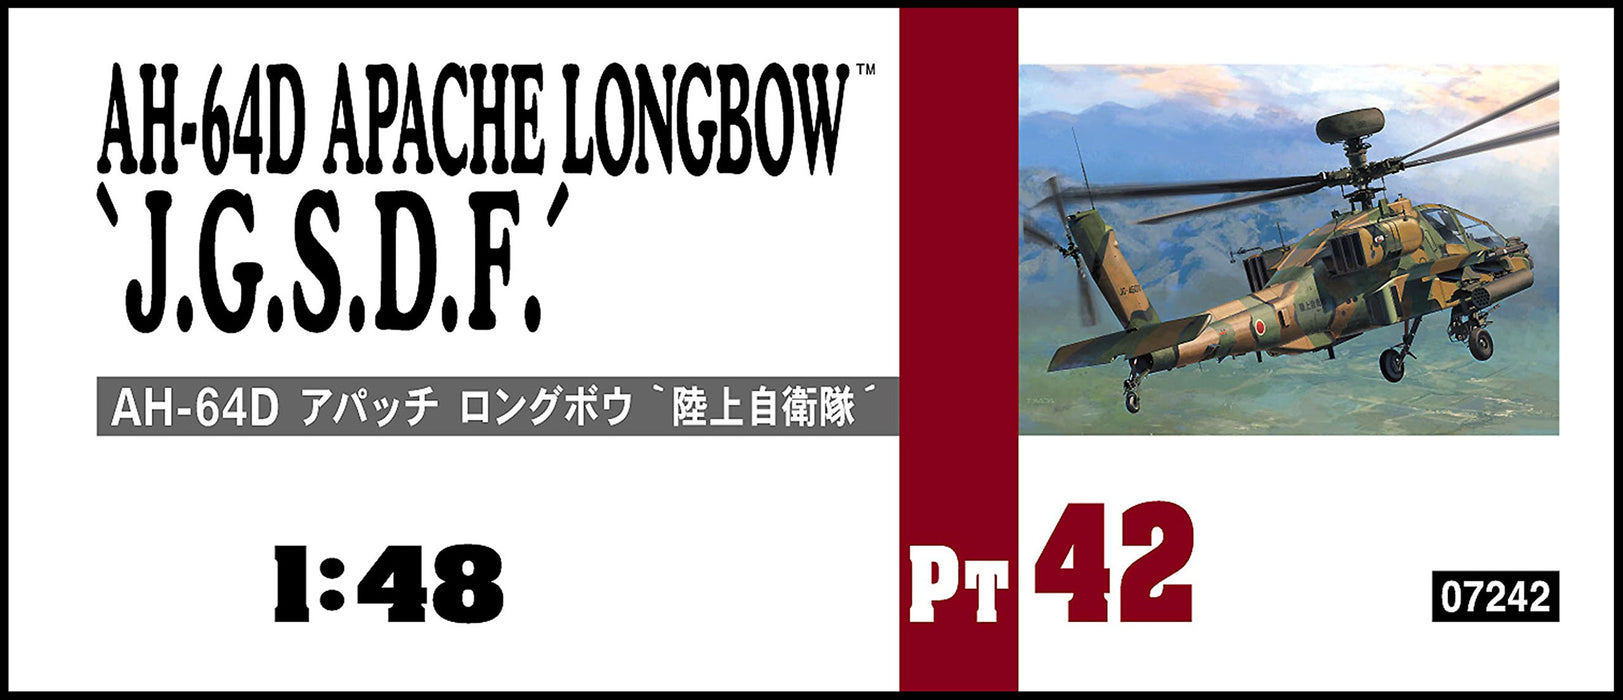 HASEGAWA 1/48 Ah-64D Apache Longbow J.G.S.D.F. Plastic Model